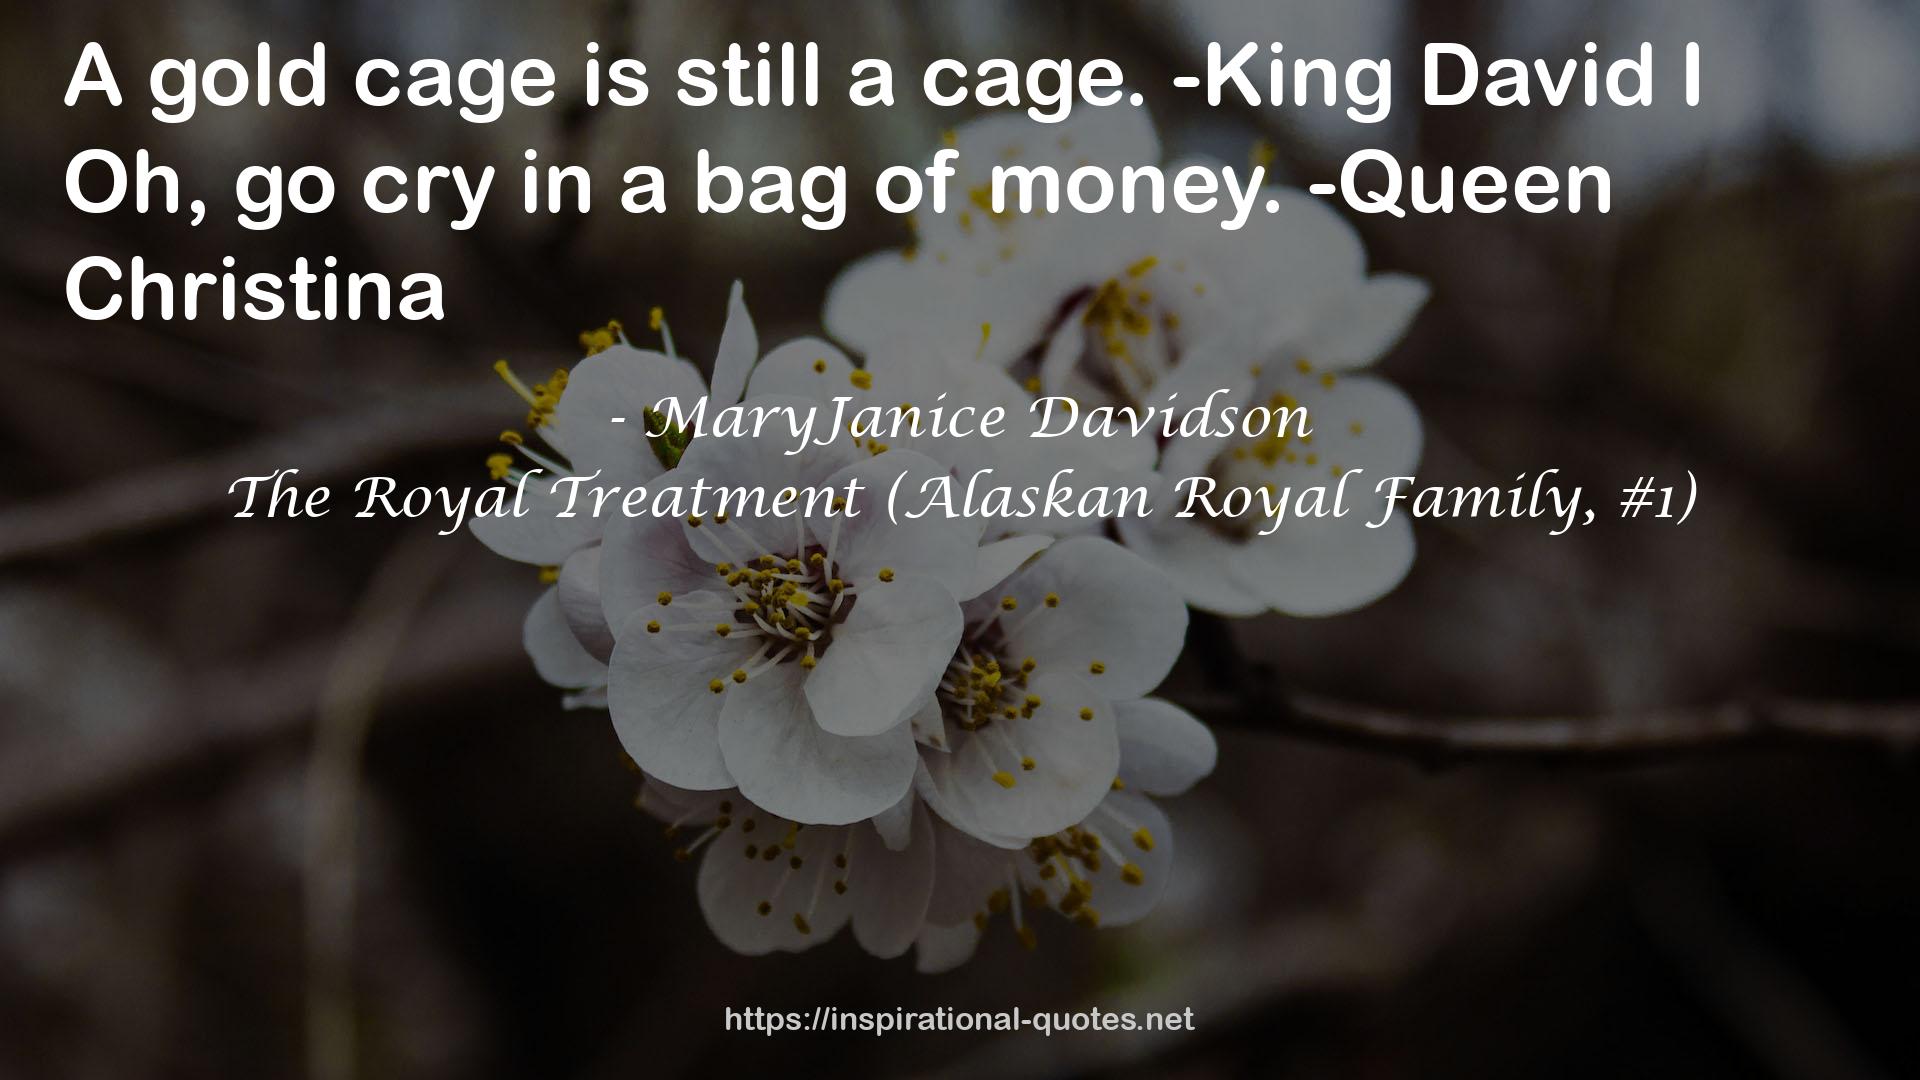 The Royal Treatment (Alaskan Royal Family, #1) QUOTES